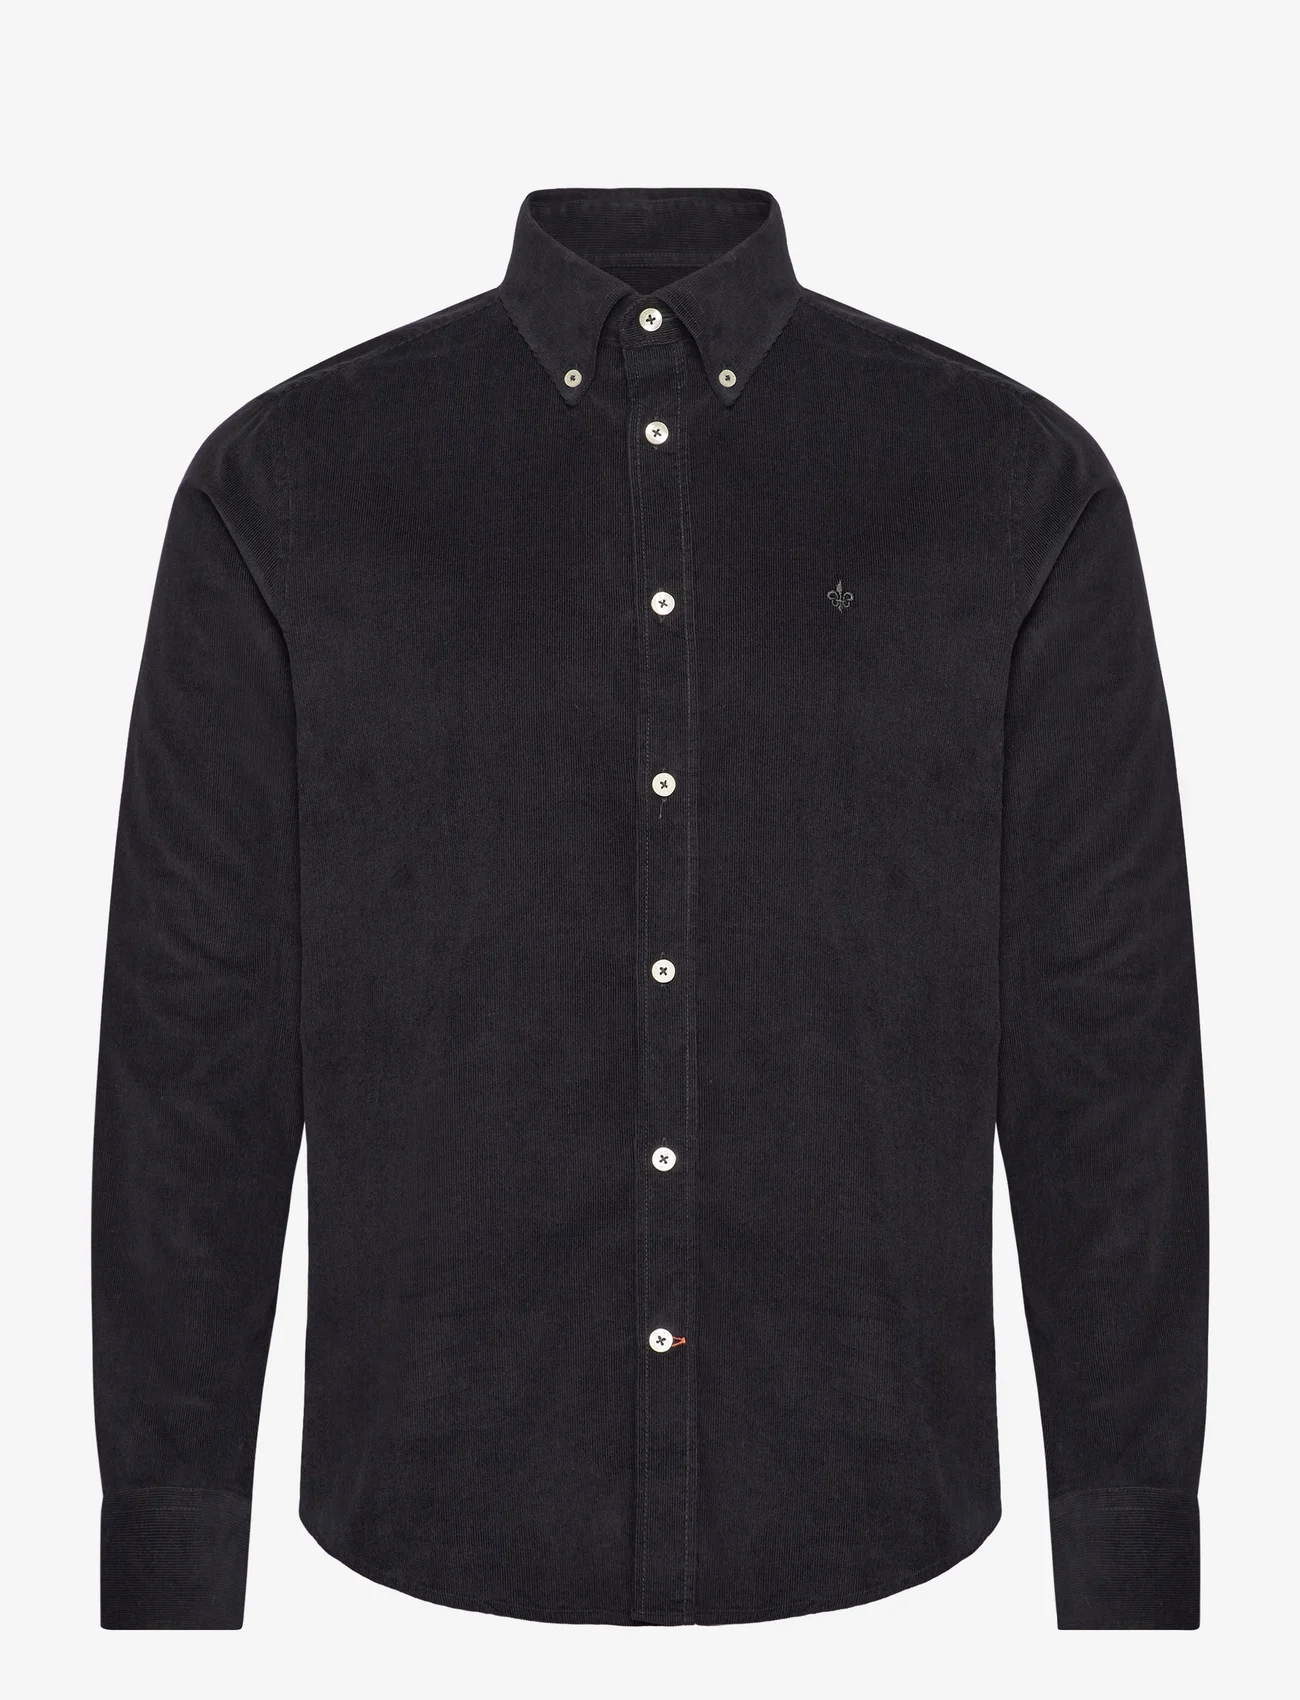 Morris - Douglas Cord Shirt - fløjlsskjorter - black - 0